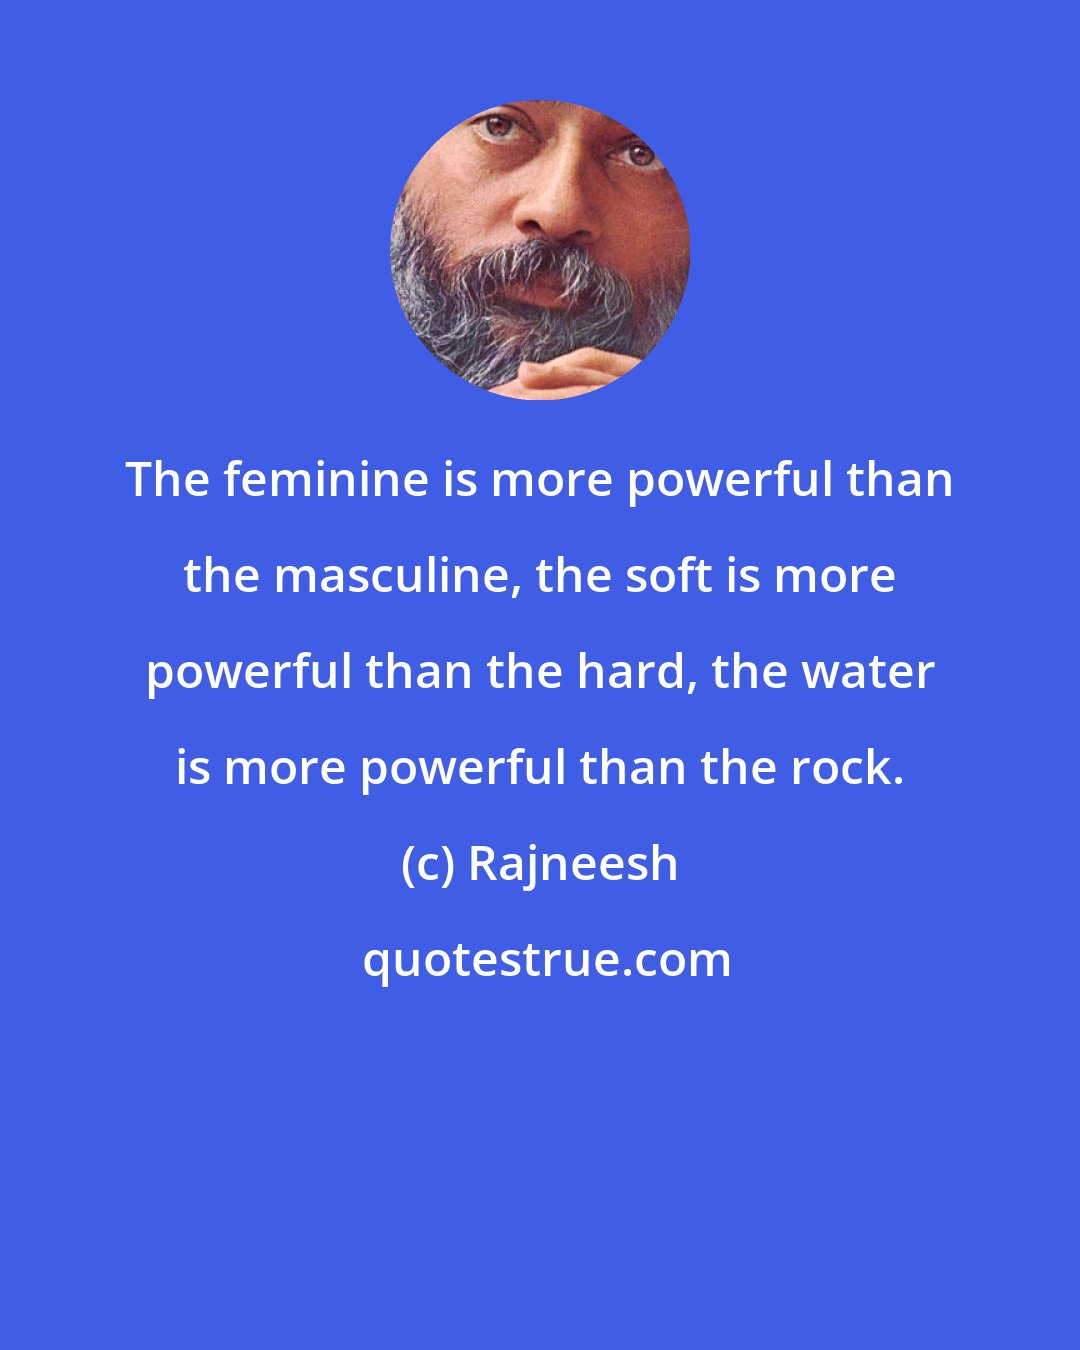 Rajneesh: The feminine is more powerful than the masculine, the soft is more powerful than the hard, the water is more powerful than the rock.